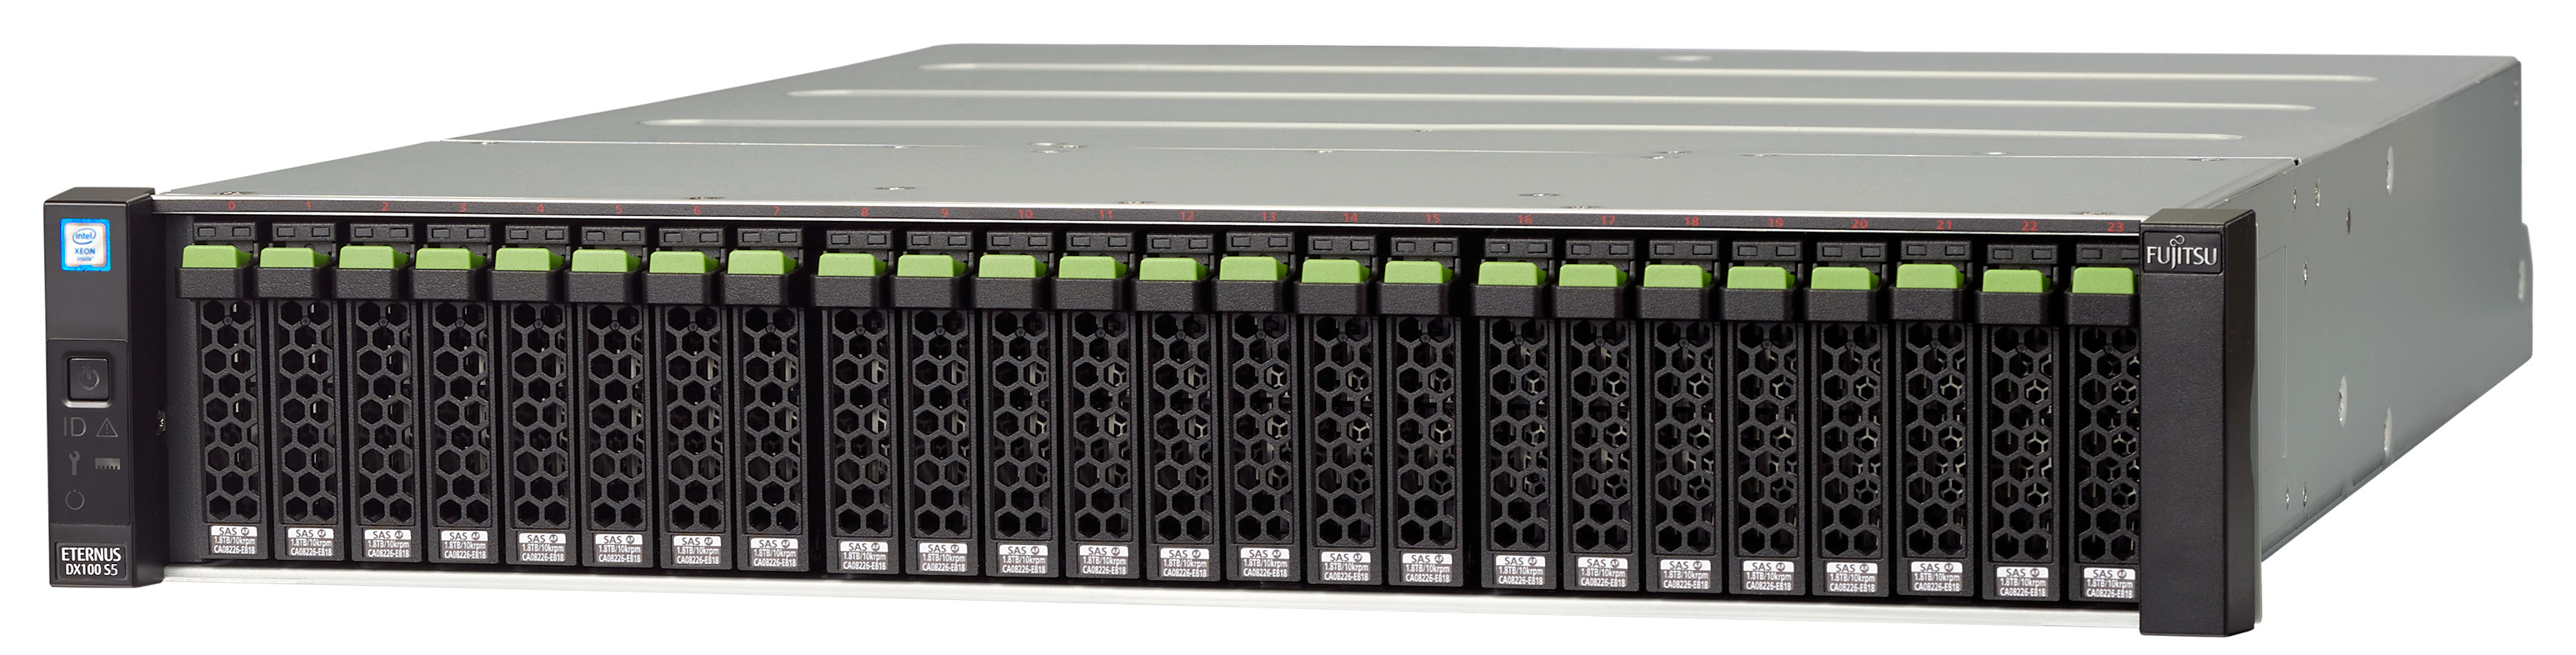 Fujitsu ETERNUS DX 100 S5 - NAS-Server - 12 Schächte